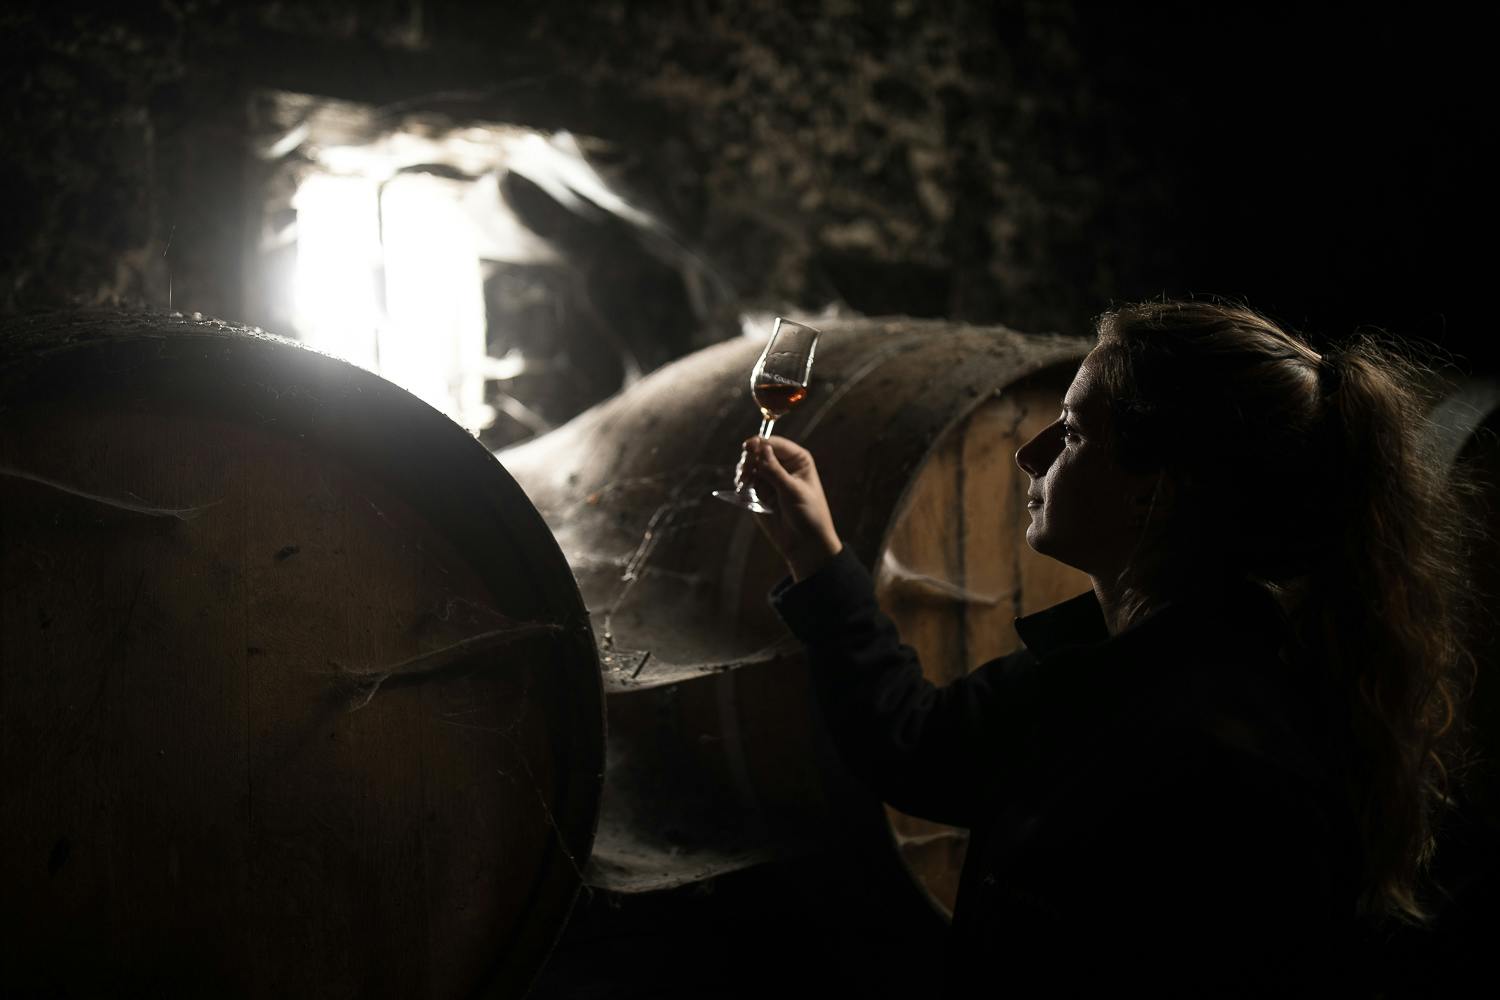 a woman observing cognac between old kegs